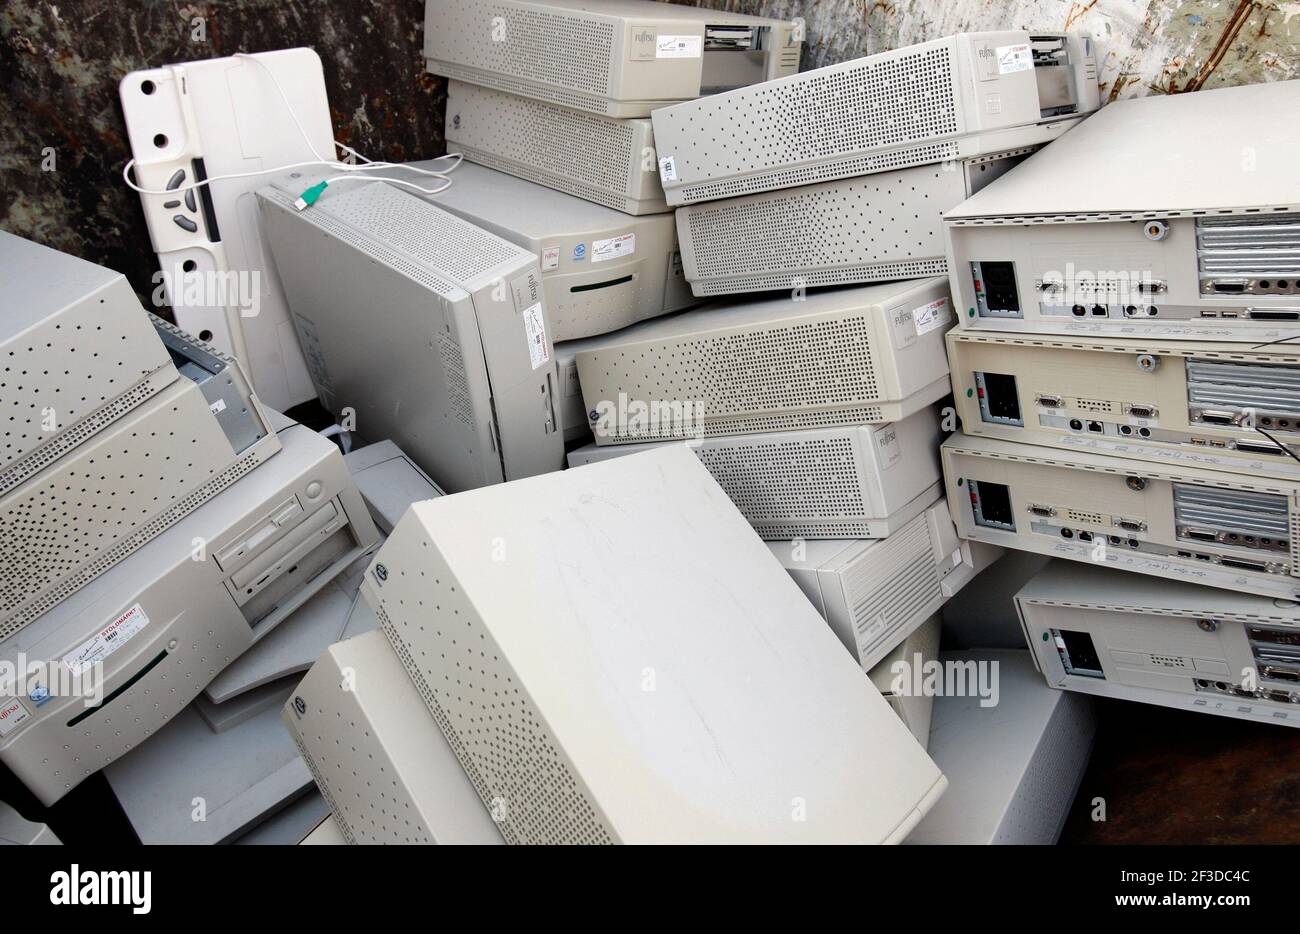 Elektronikschrott, alte Festplatten und Computer, die in einer kommunalen  Deponie entsorgt werden, wo Müll weggeworfen werden kann. Auch ein  Adventskerzleuchter wurde weggeworfen Stockfotografie - Alamy